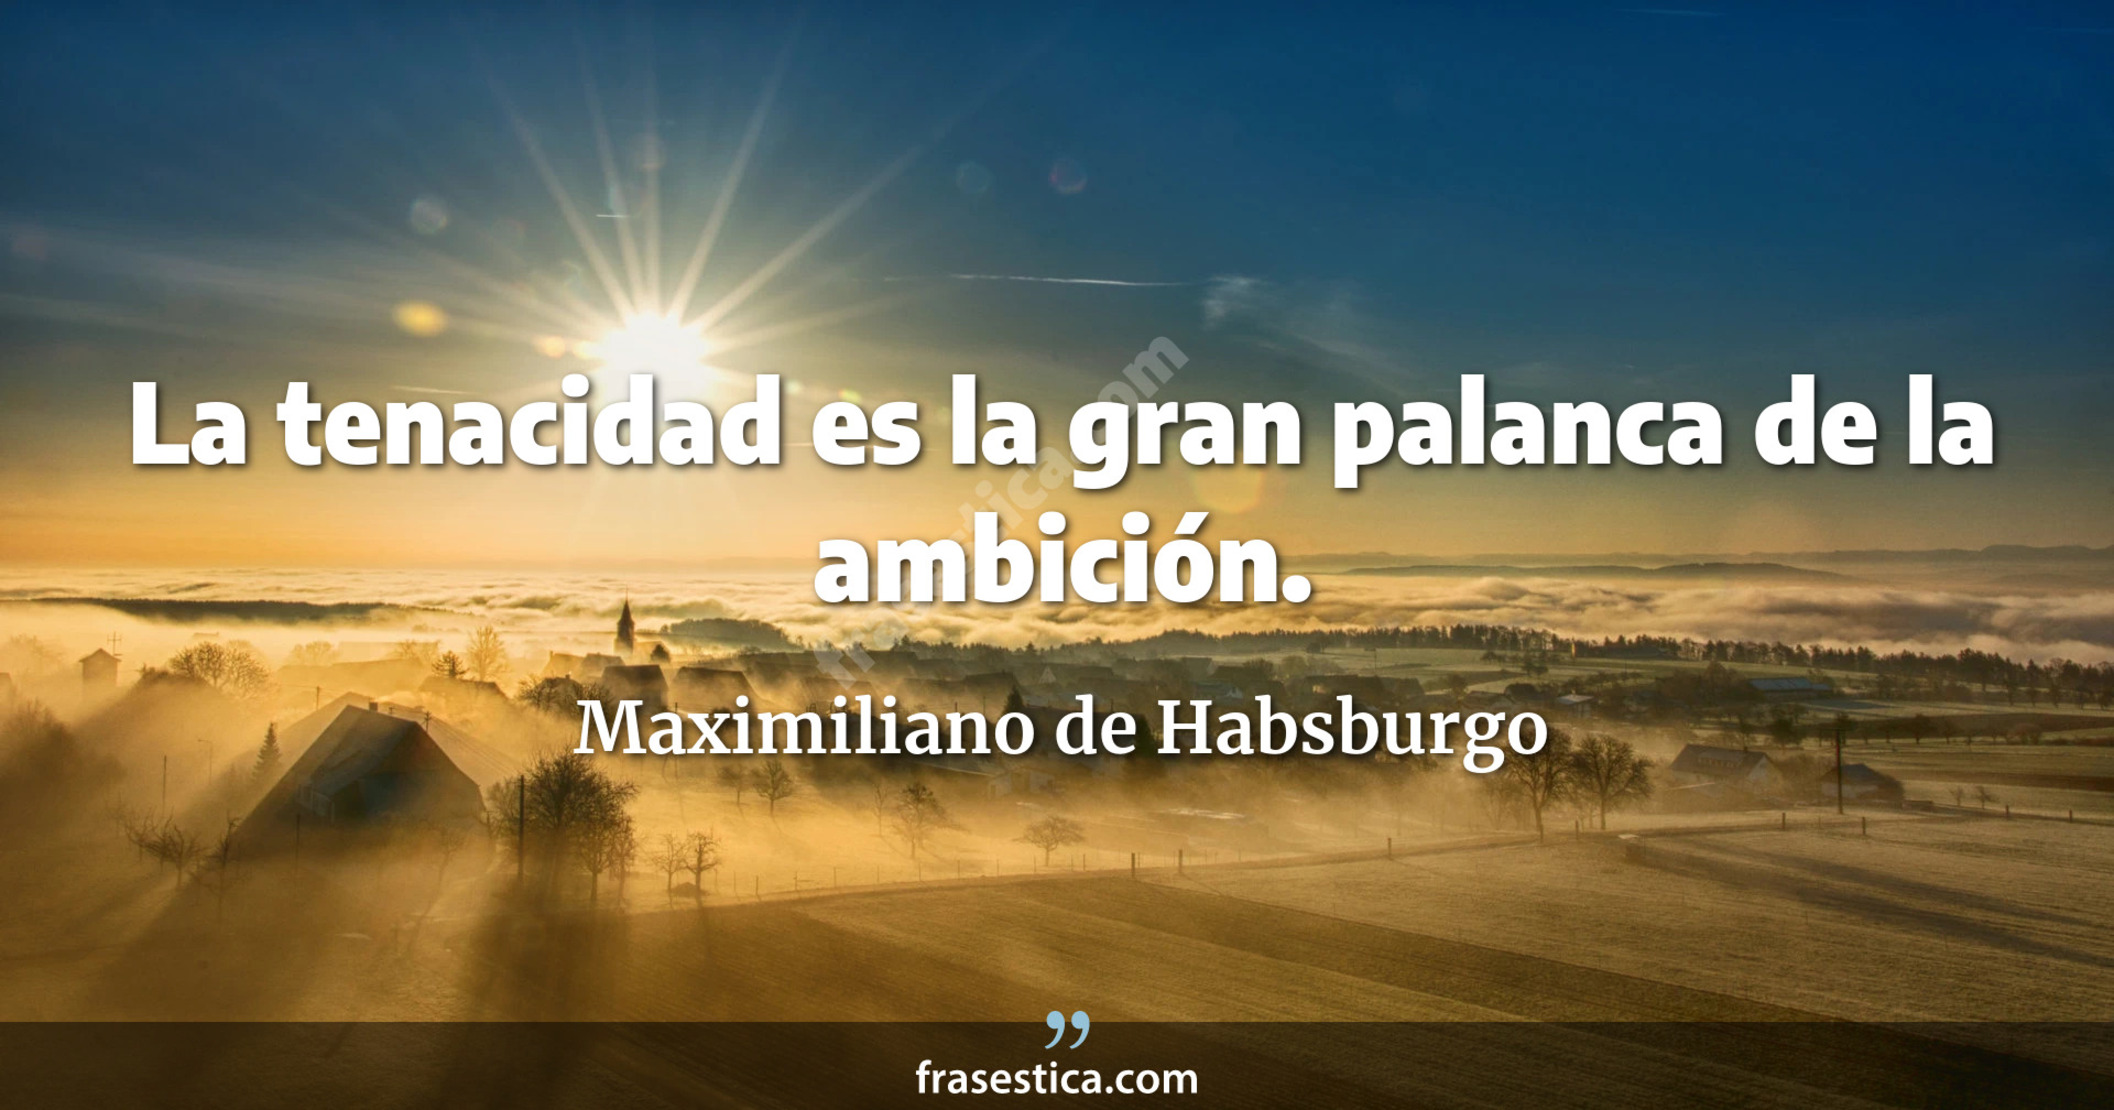 La tenacidad es la gran palanca de la ambición. - Maximiliano de Habsburgo